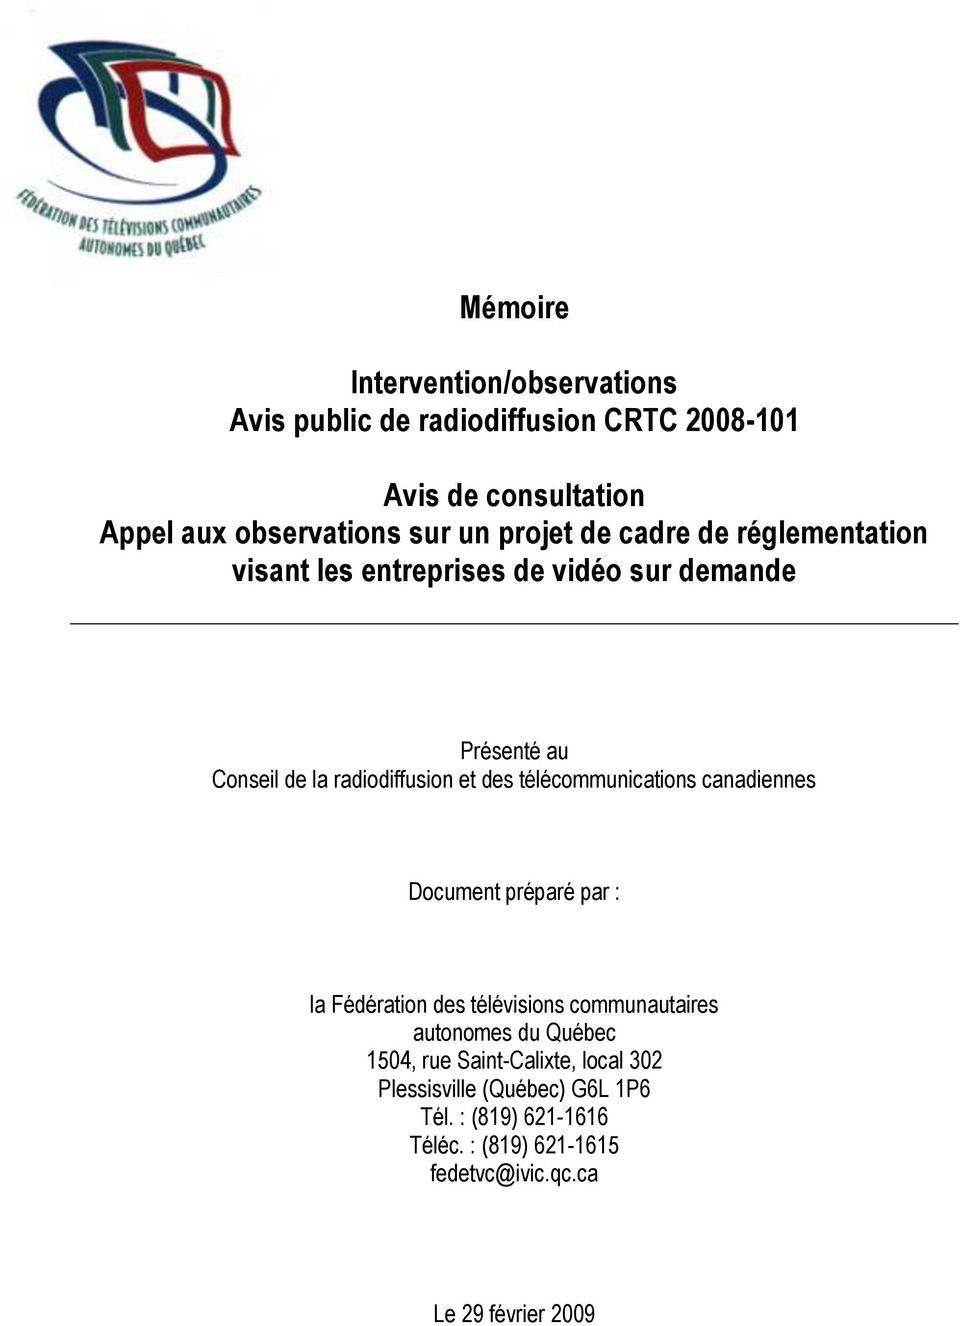 télécommunications canadiennes Document préparé par : la Fédération des télévisions communautaires autonomes du Québec 1504, rue